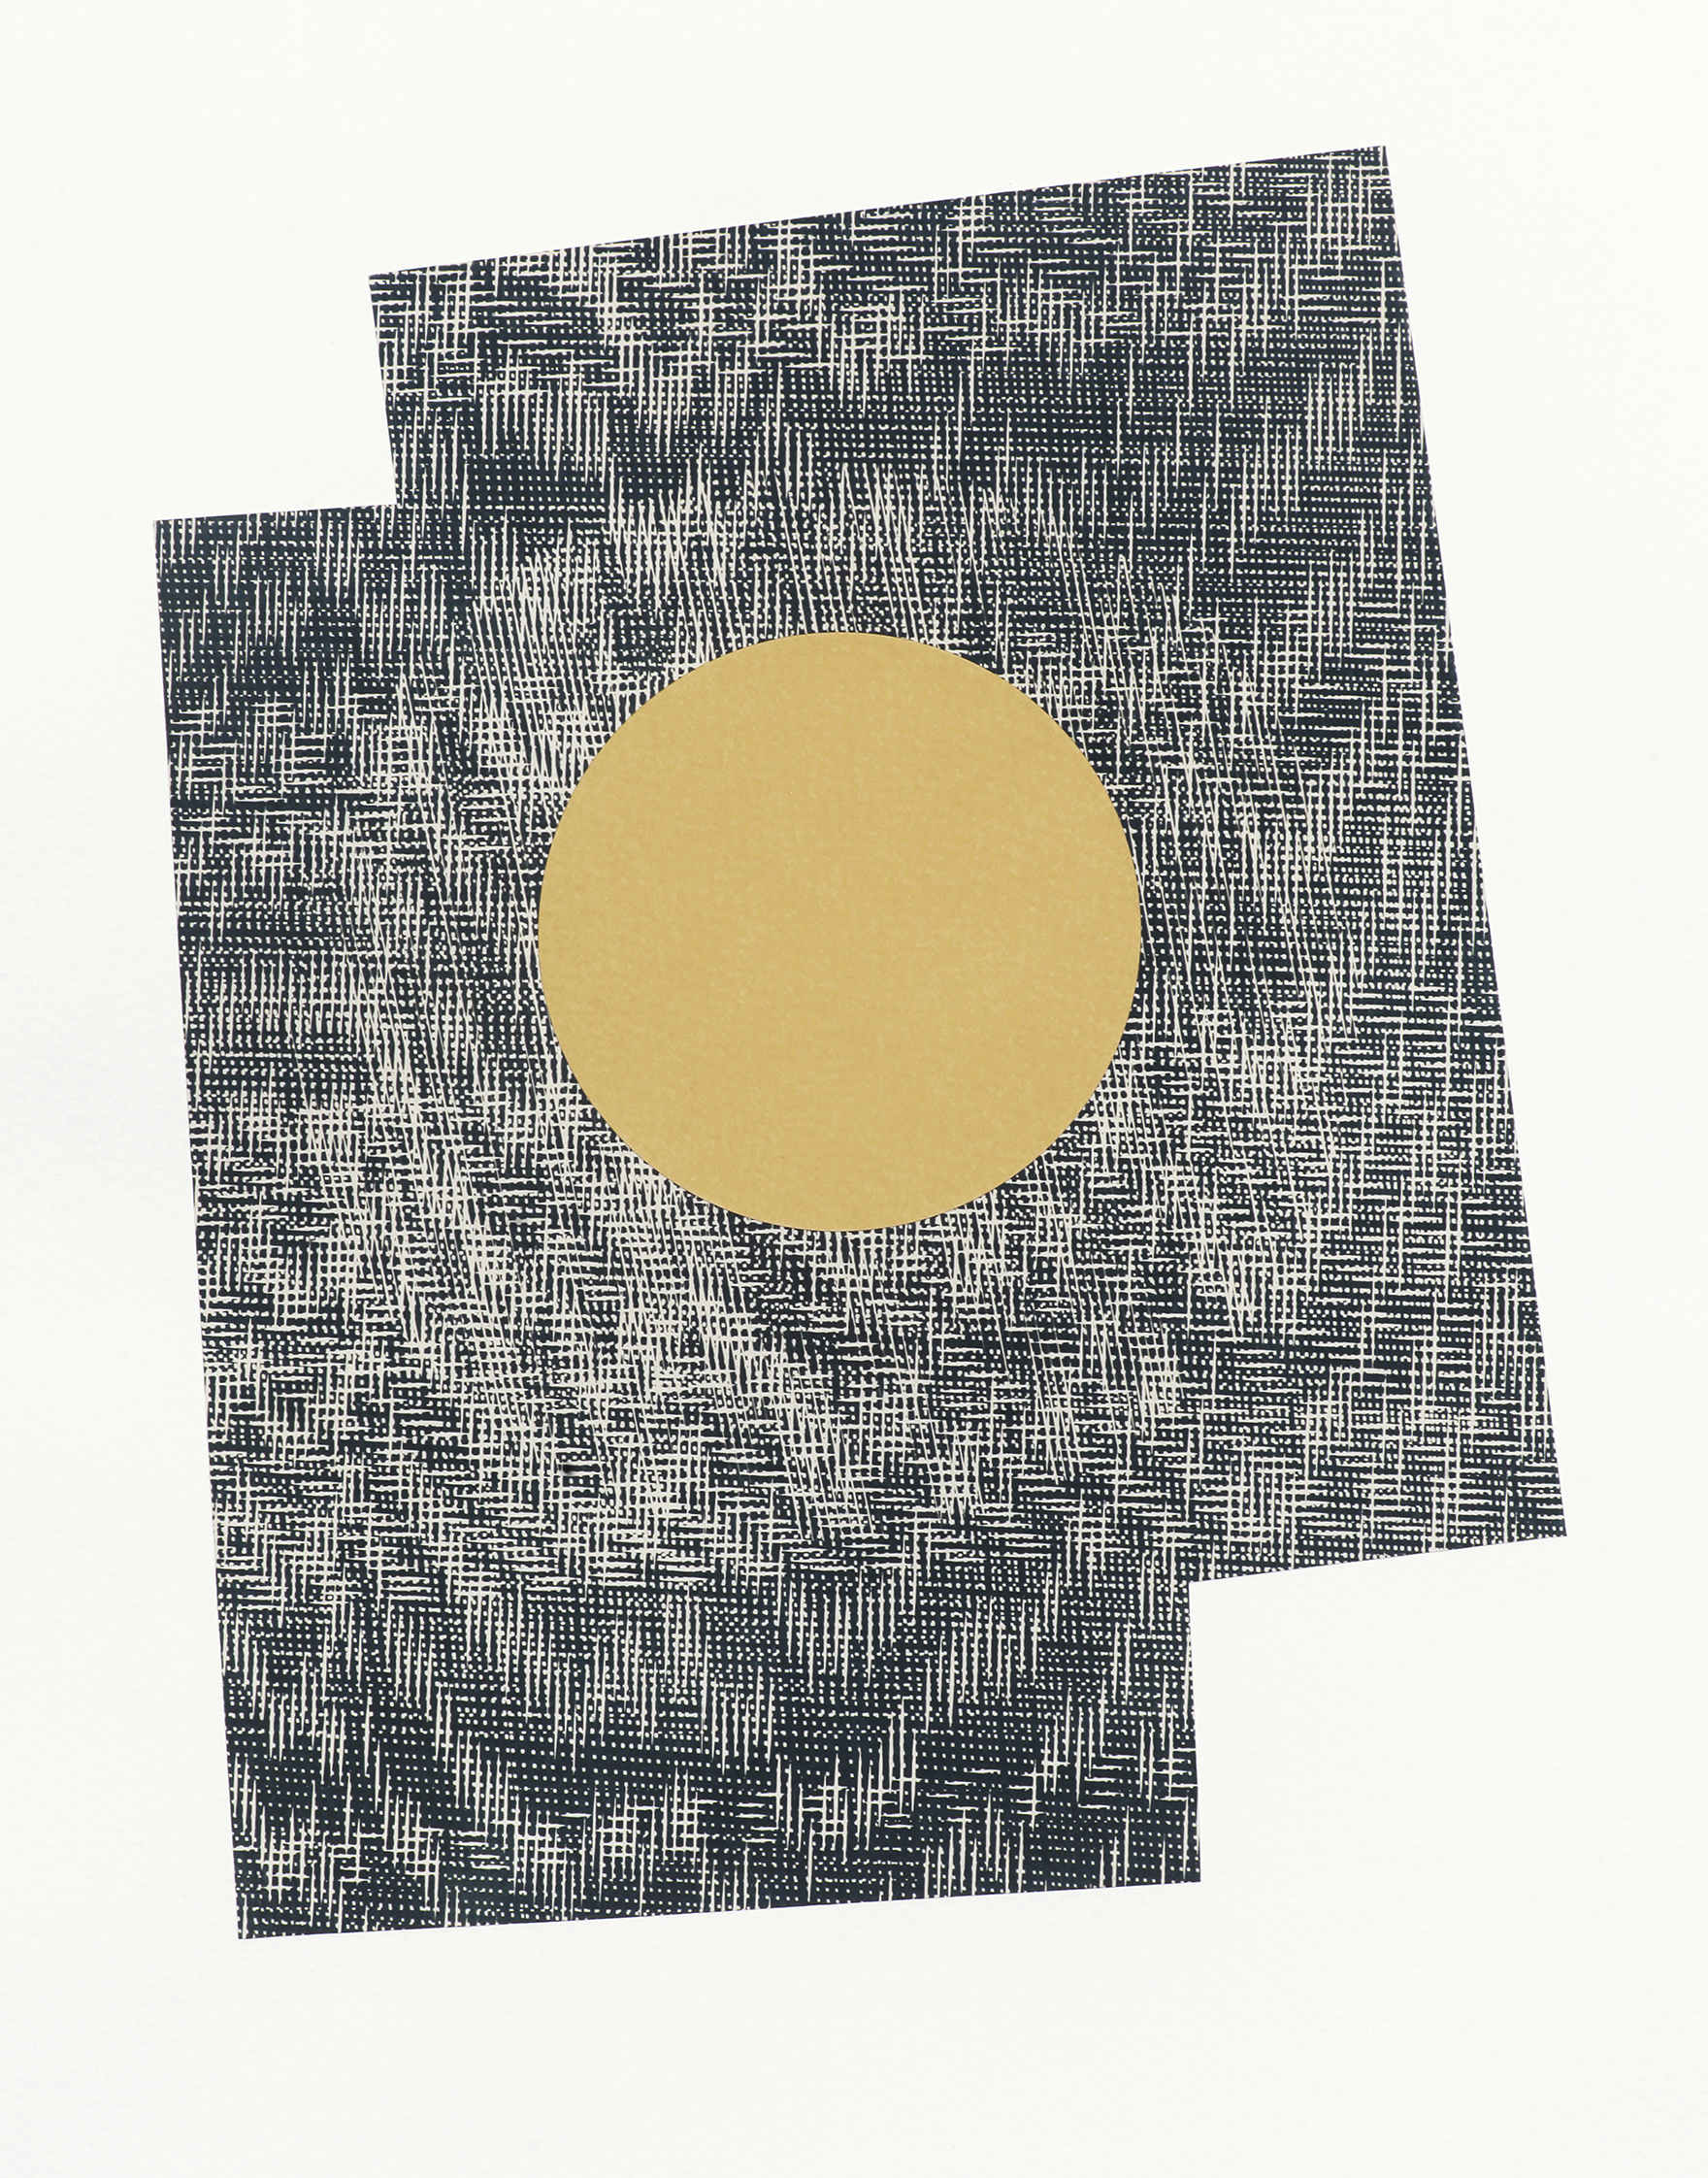 Epicentre - paper collage; 27,4 x 37,7 cm; 2018